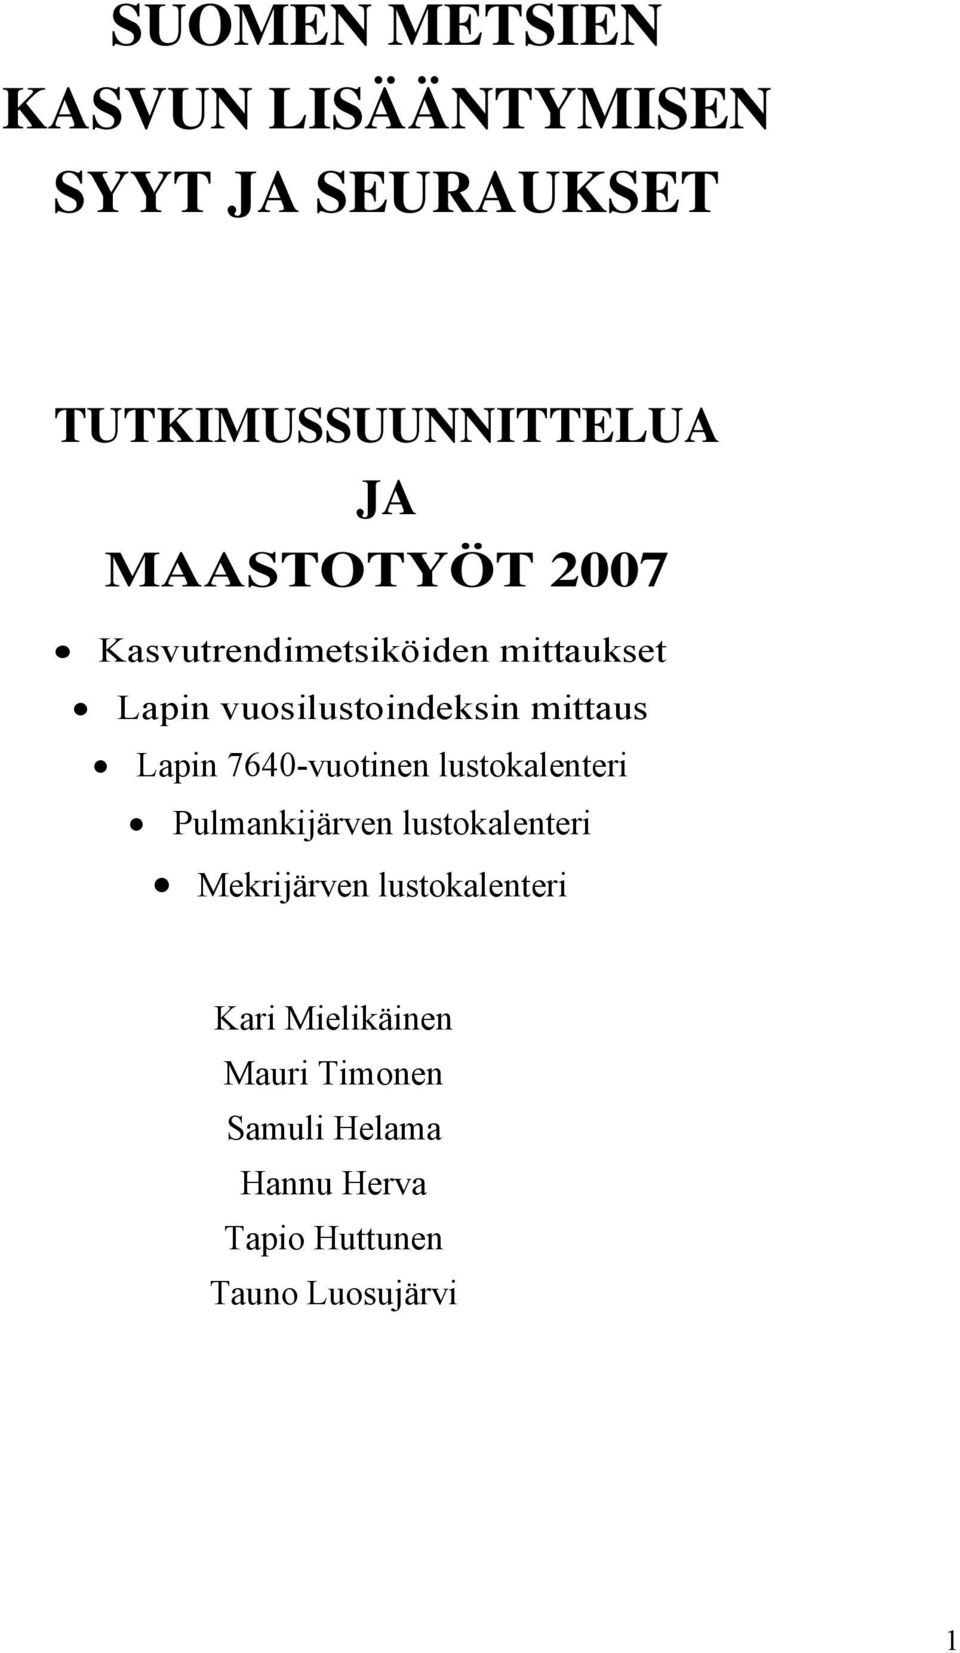 Lapin 7640-vuotinen lustokalenteri Pulmankijärven lustokalenteri Mekrijärven